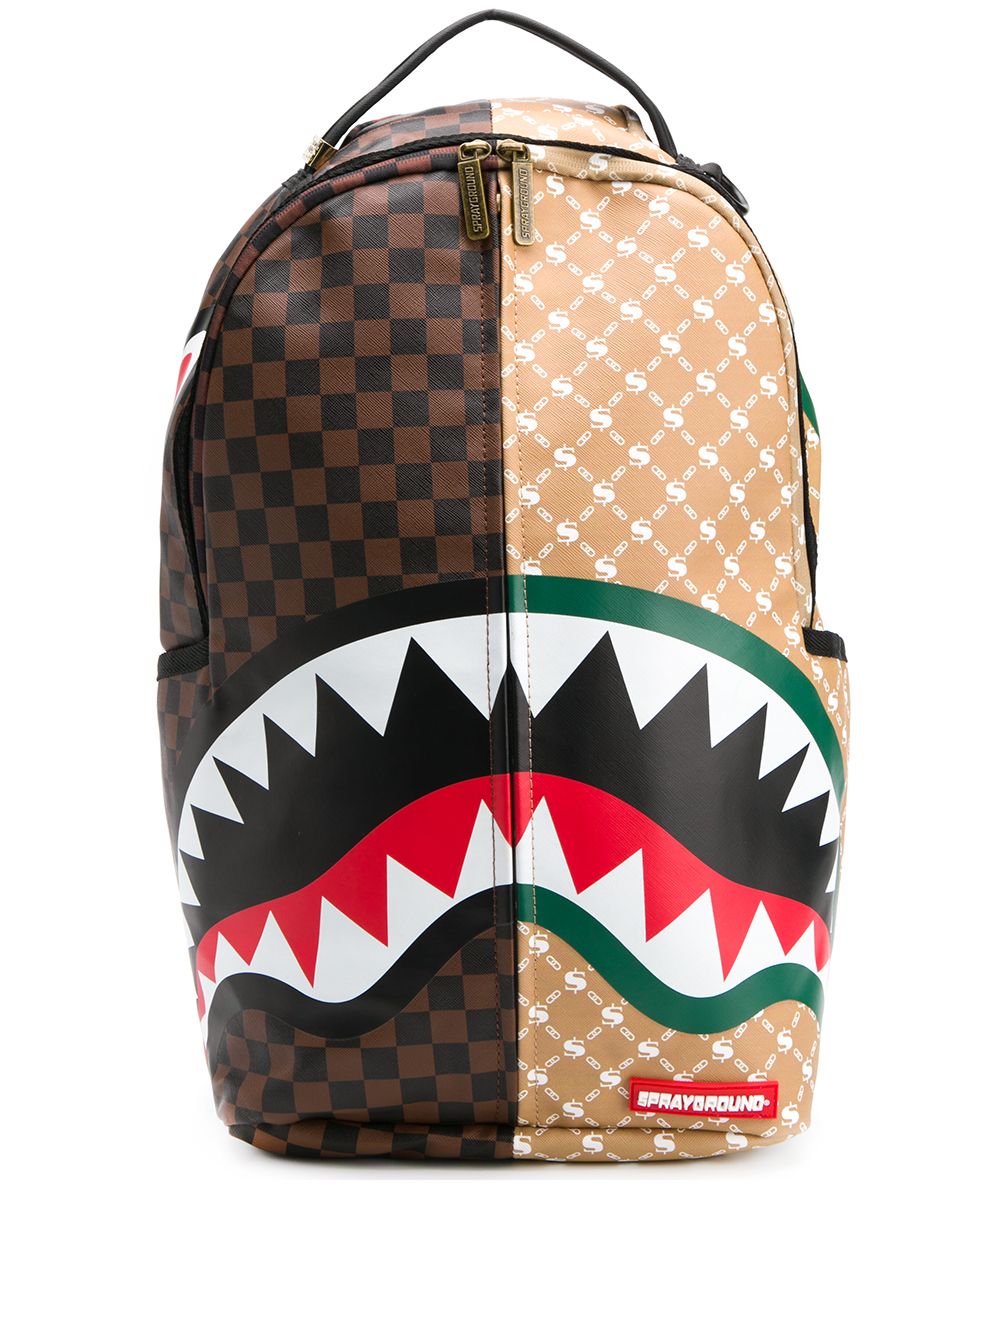 gucci shark backpack